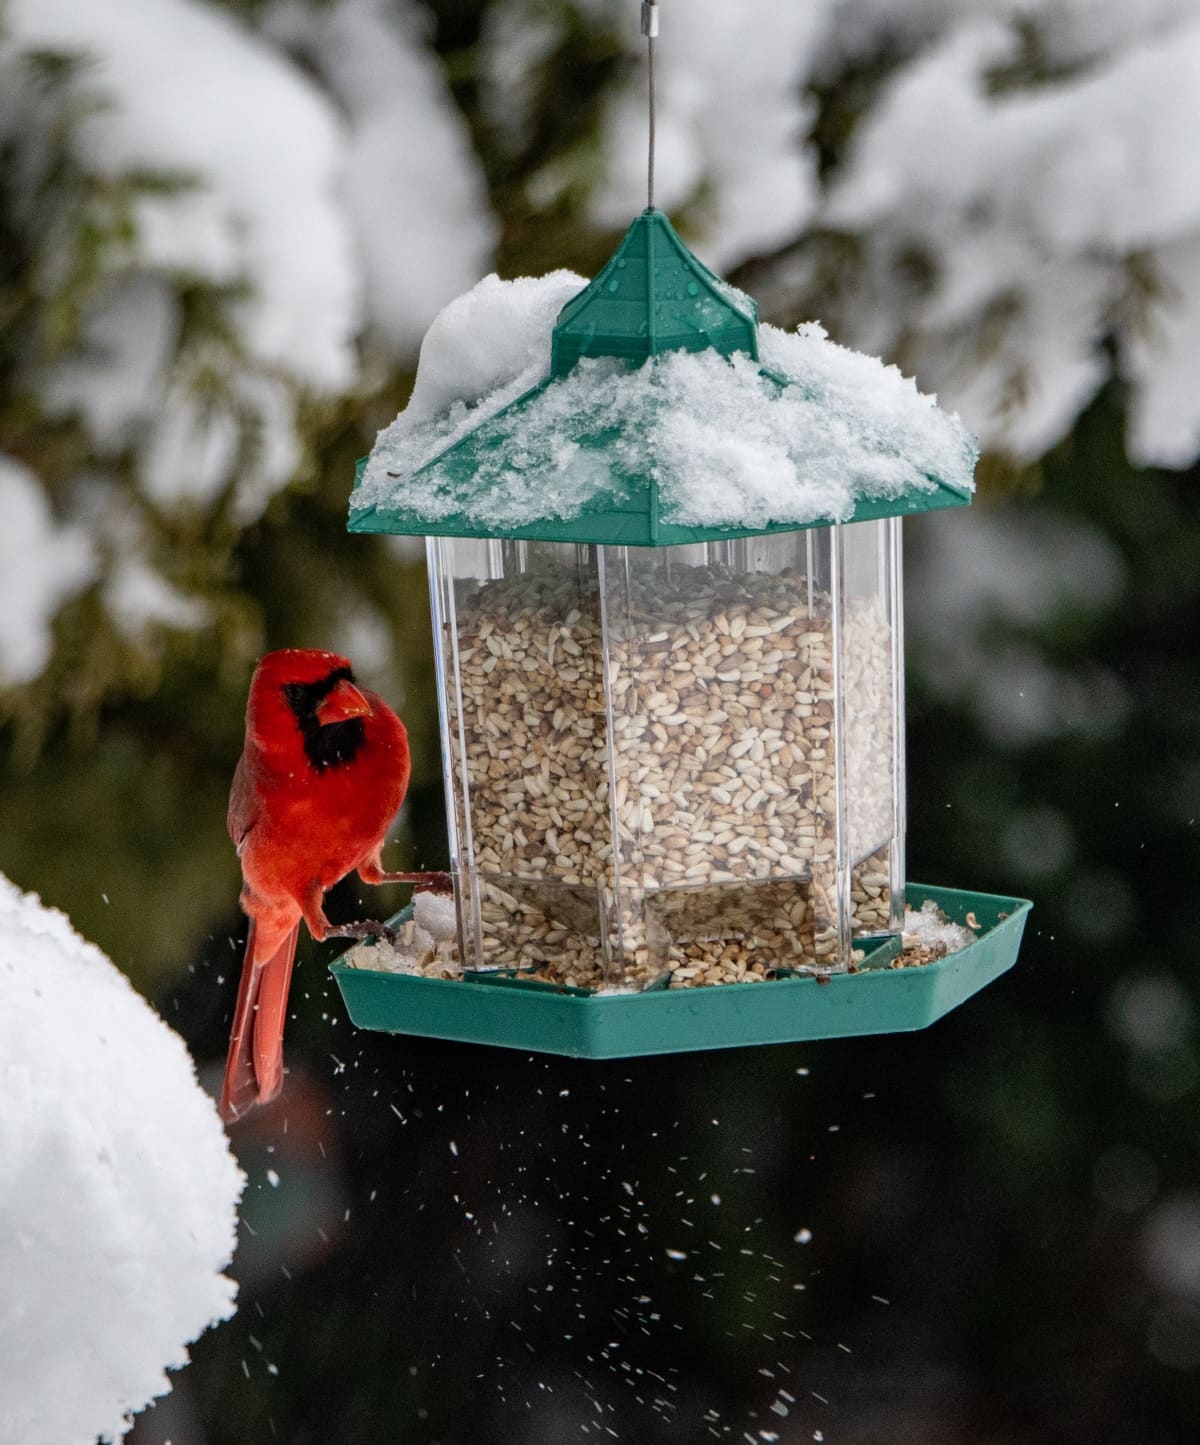 A male red cardinal bird just lands on a backyard bird feeder